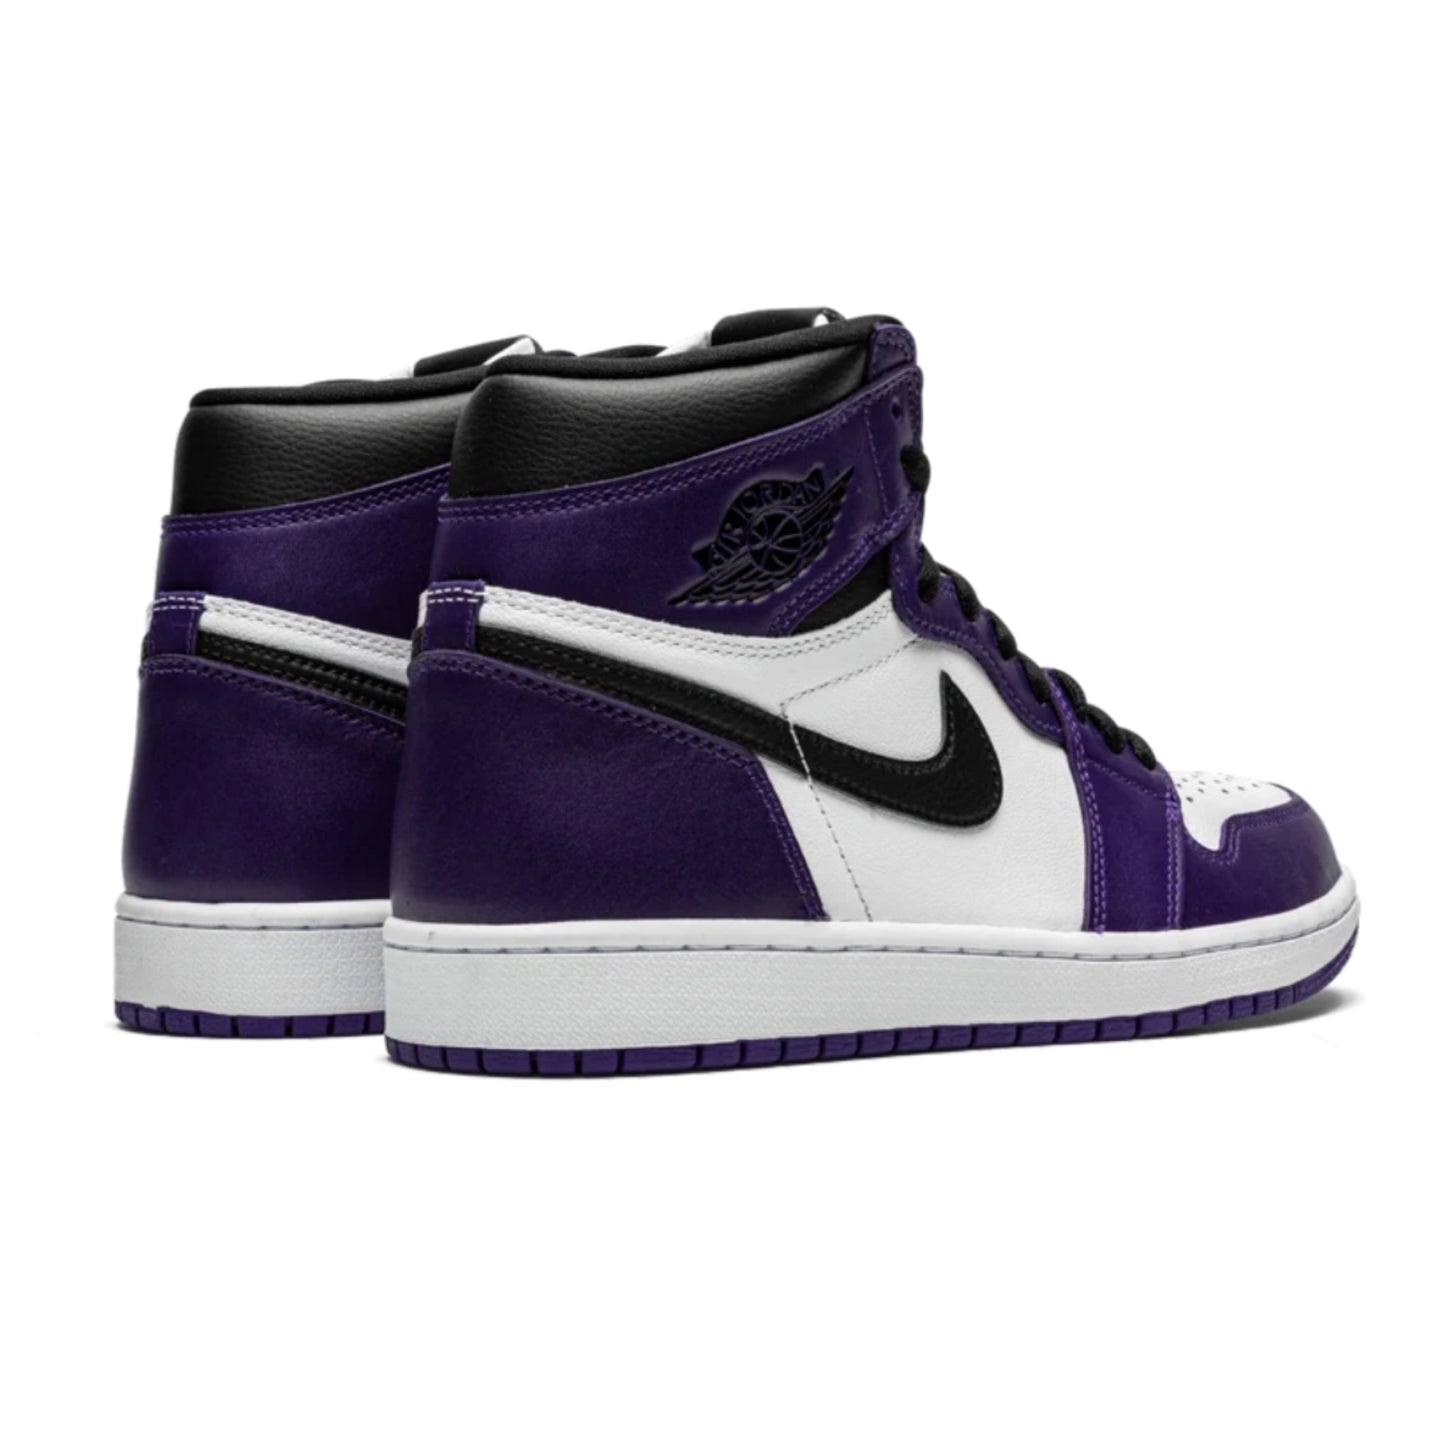 Air Jordan 1 High Retro Court Purple White